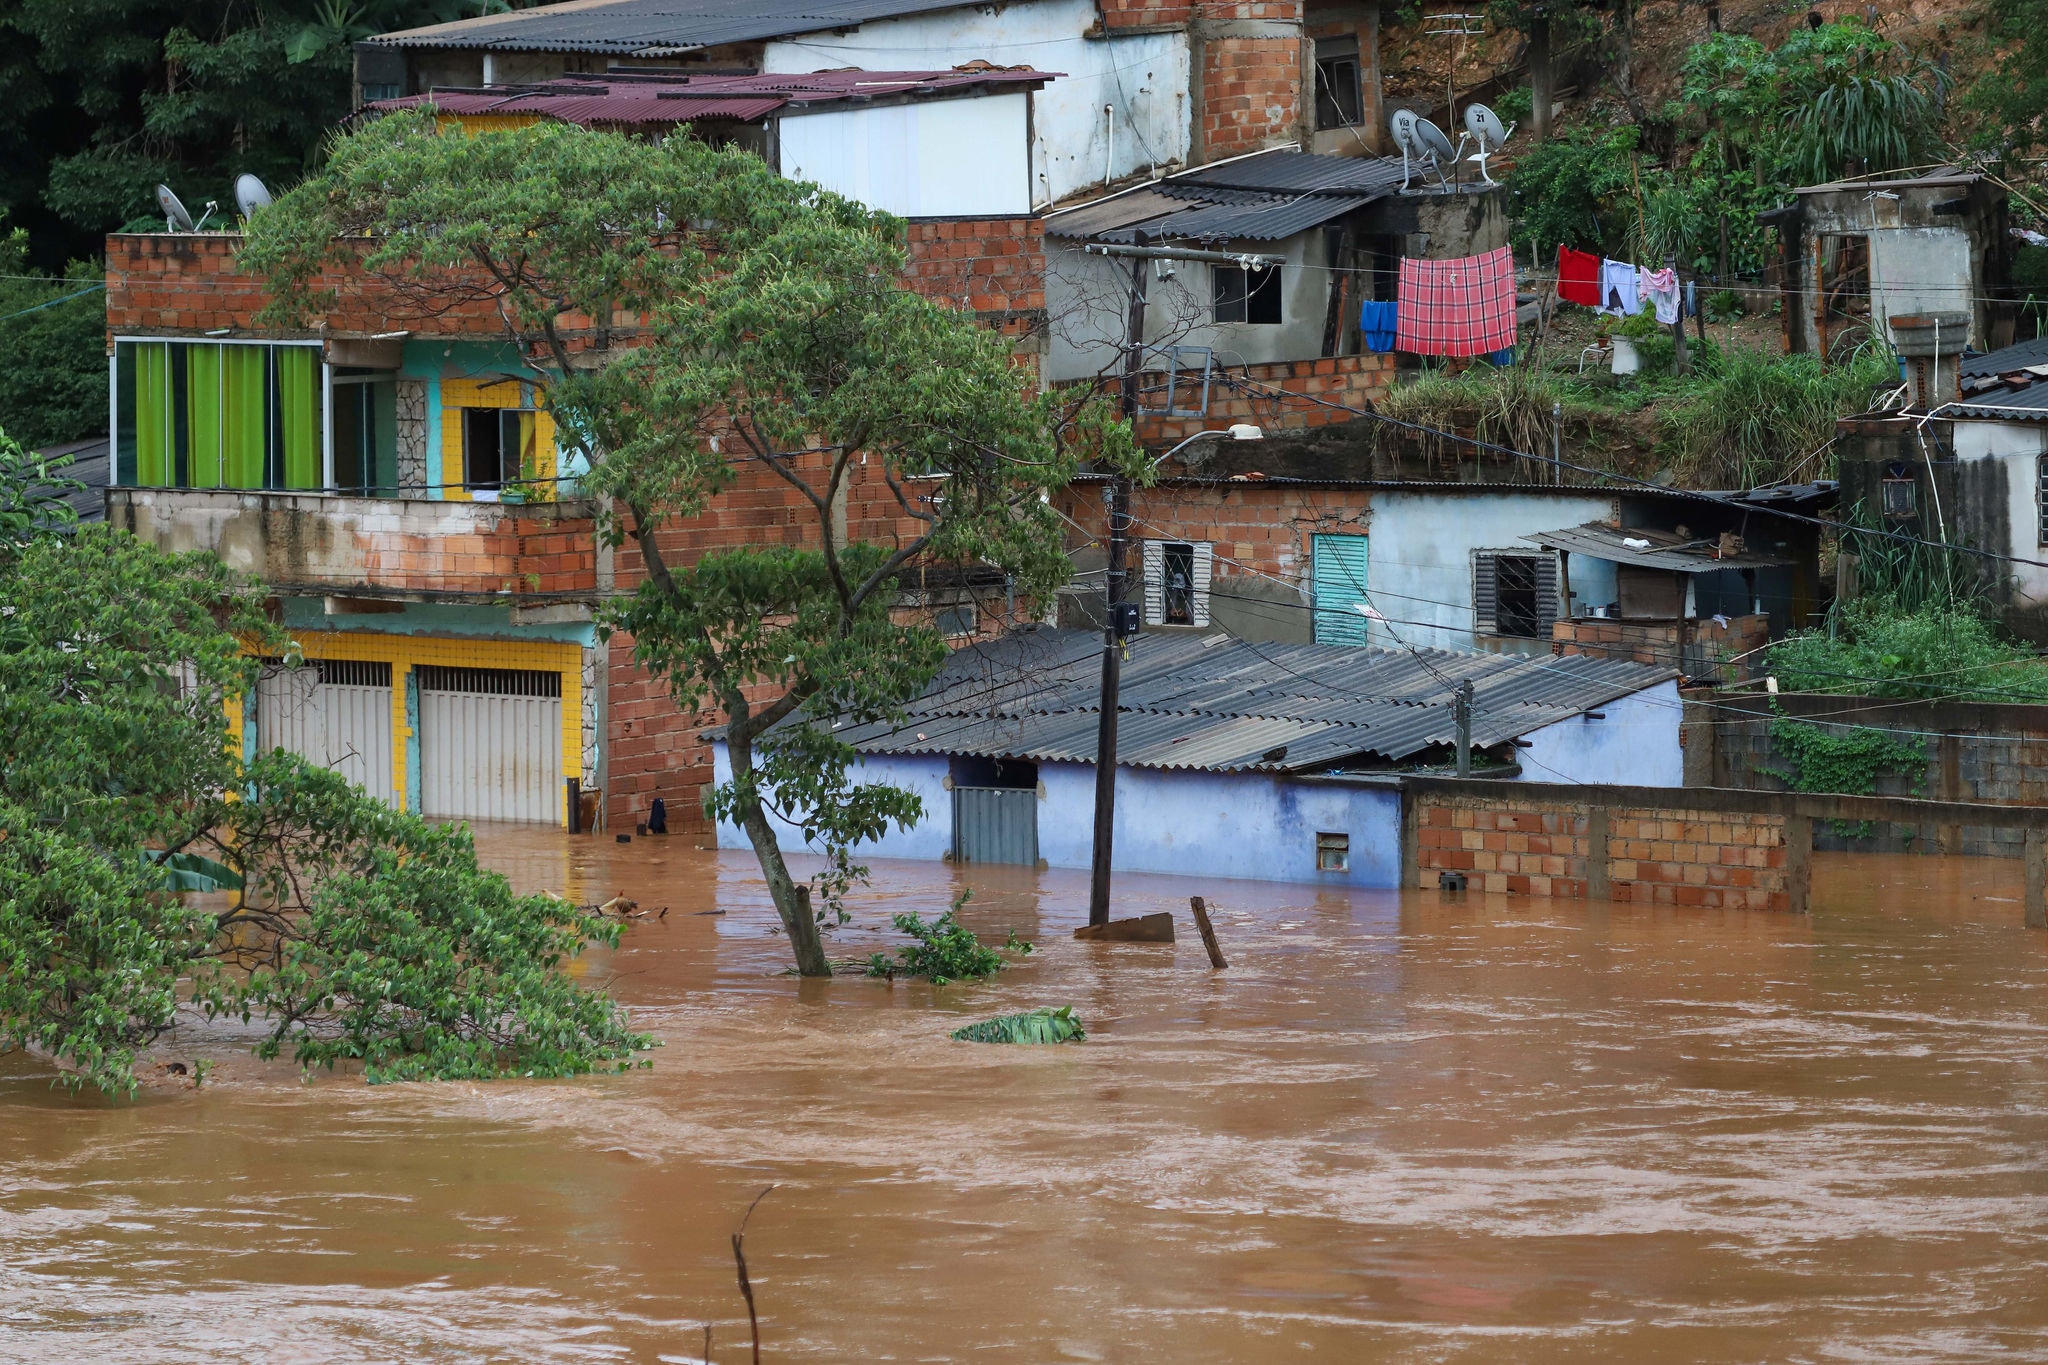 Cidades mineiras estão vulneráveis aos fenômenos climáticos extremos como a chuva e a seca